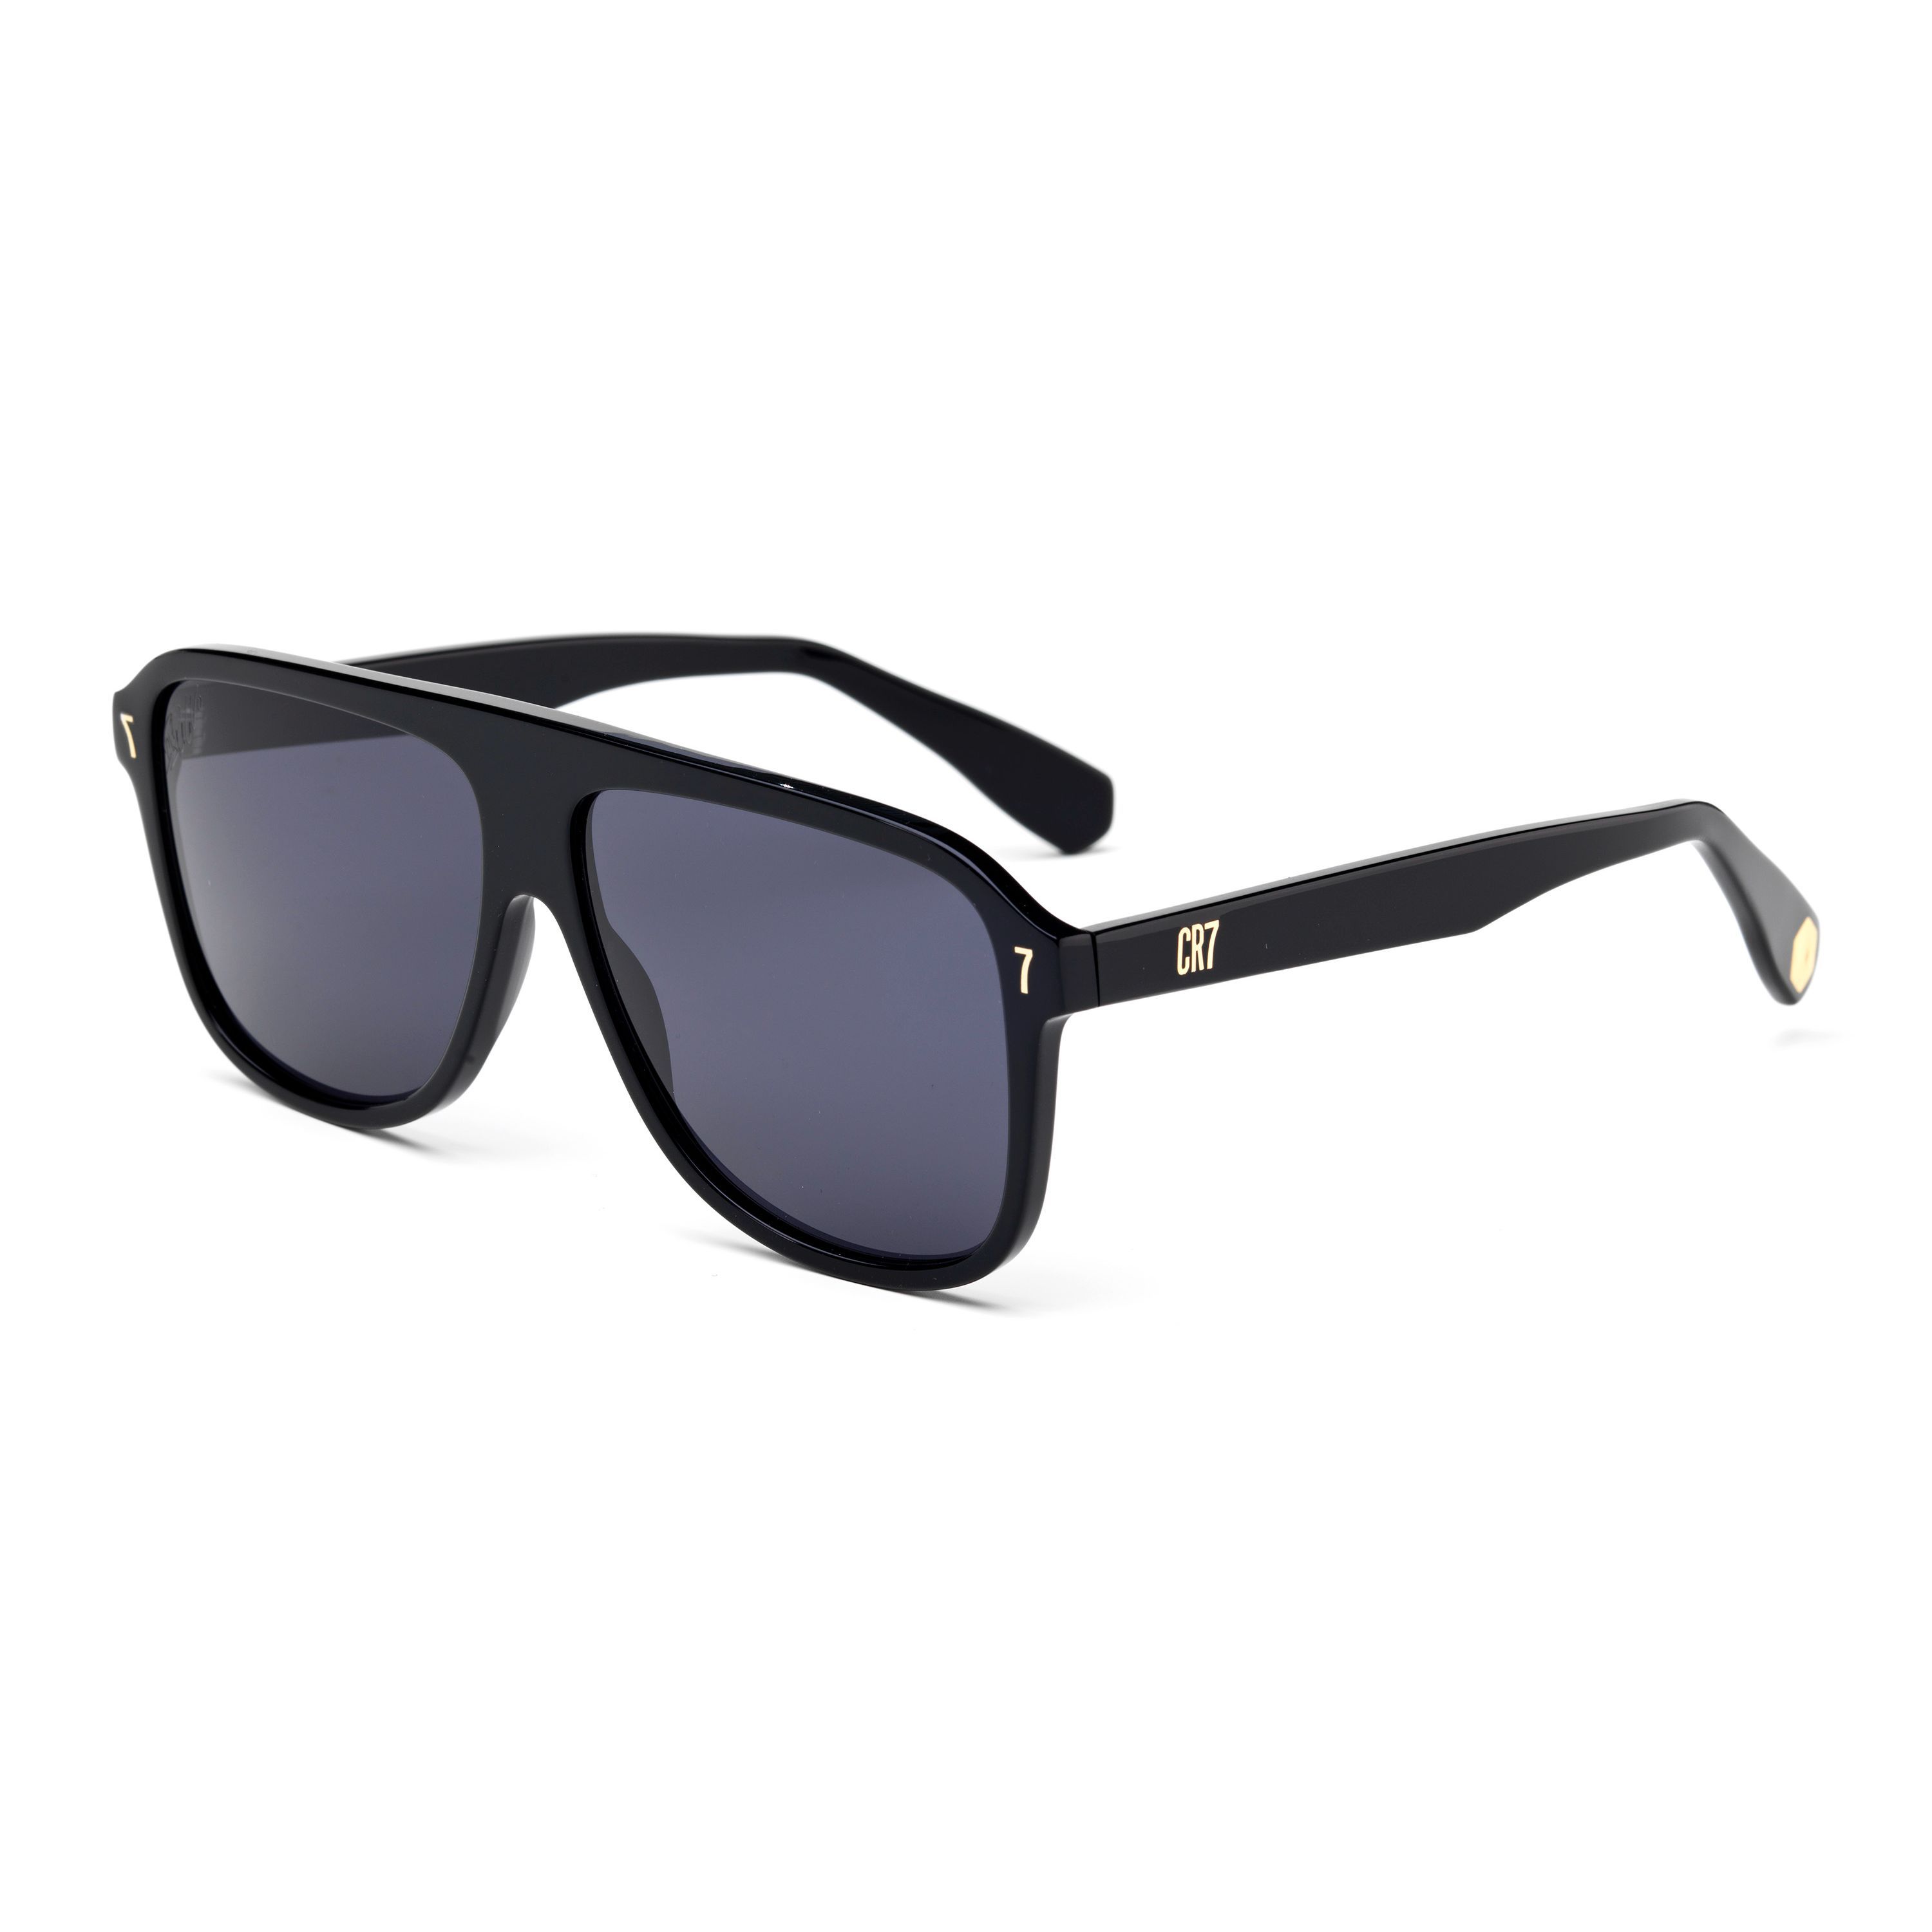 BD002 Pilot Sunglasses 9 - size 59